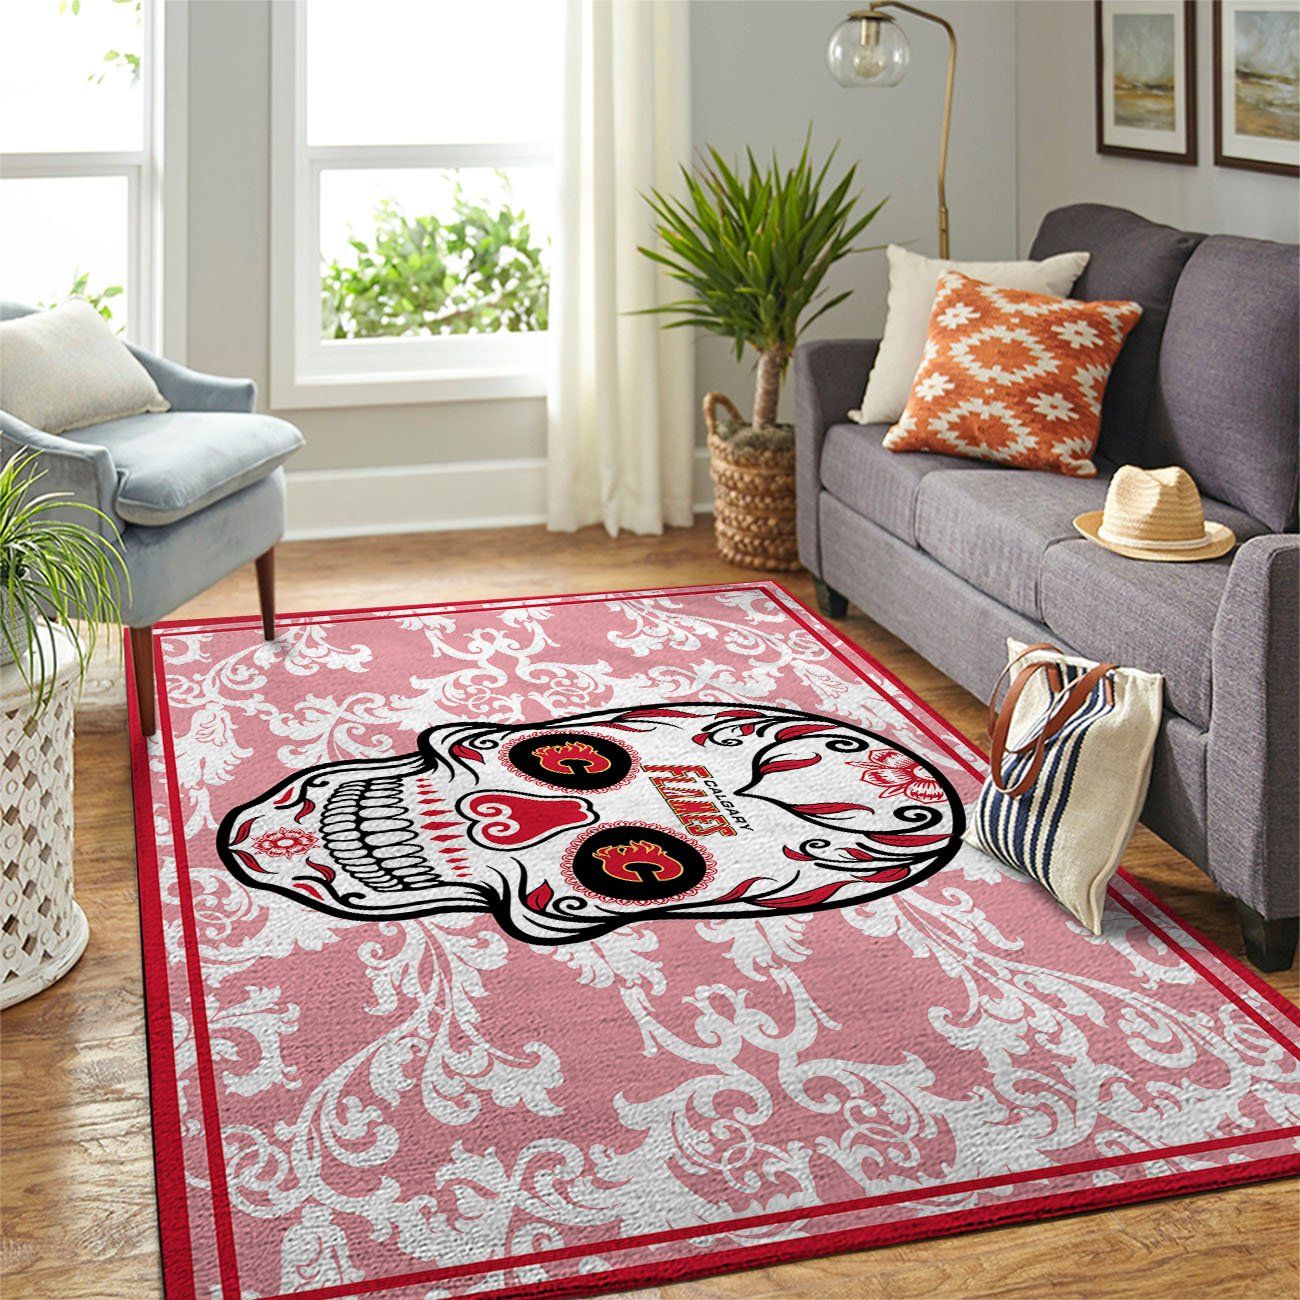 Calgary Flames Nhl Team Logo Skull Flower Type 7239 Rug Area Carpet Home Decor Living Room